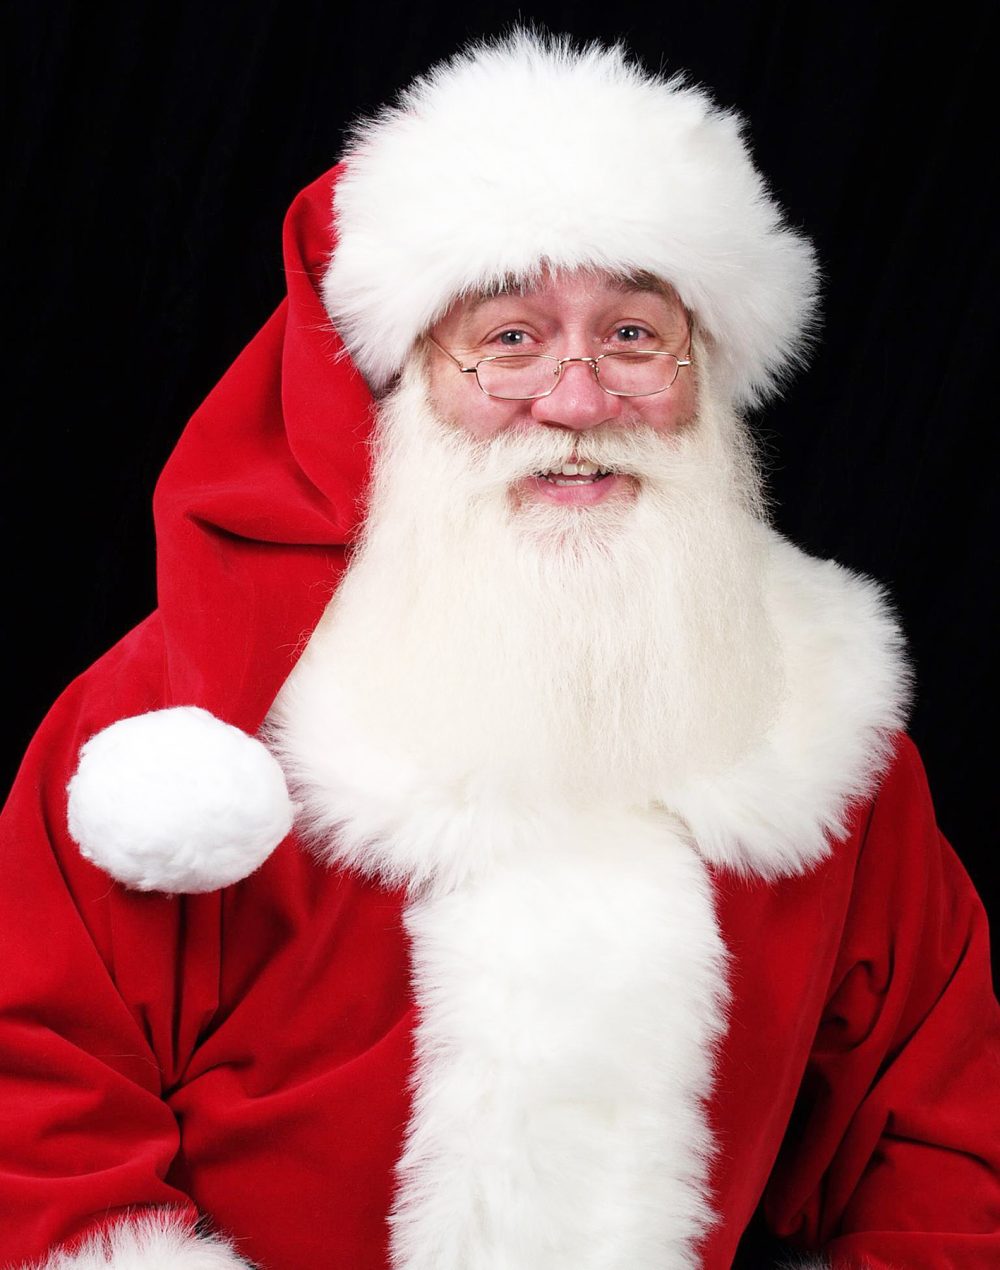 Eric J. Schmitt-Matzen Santa Claus